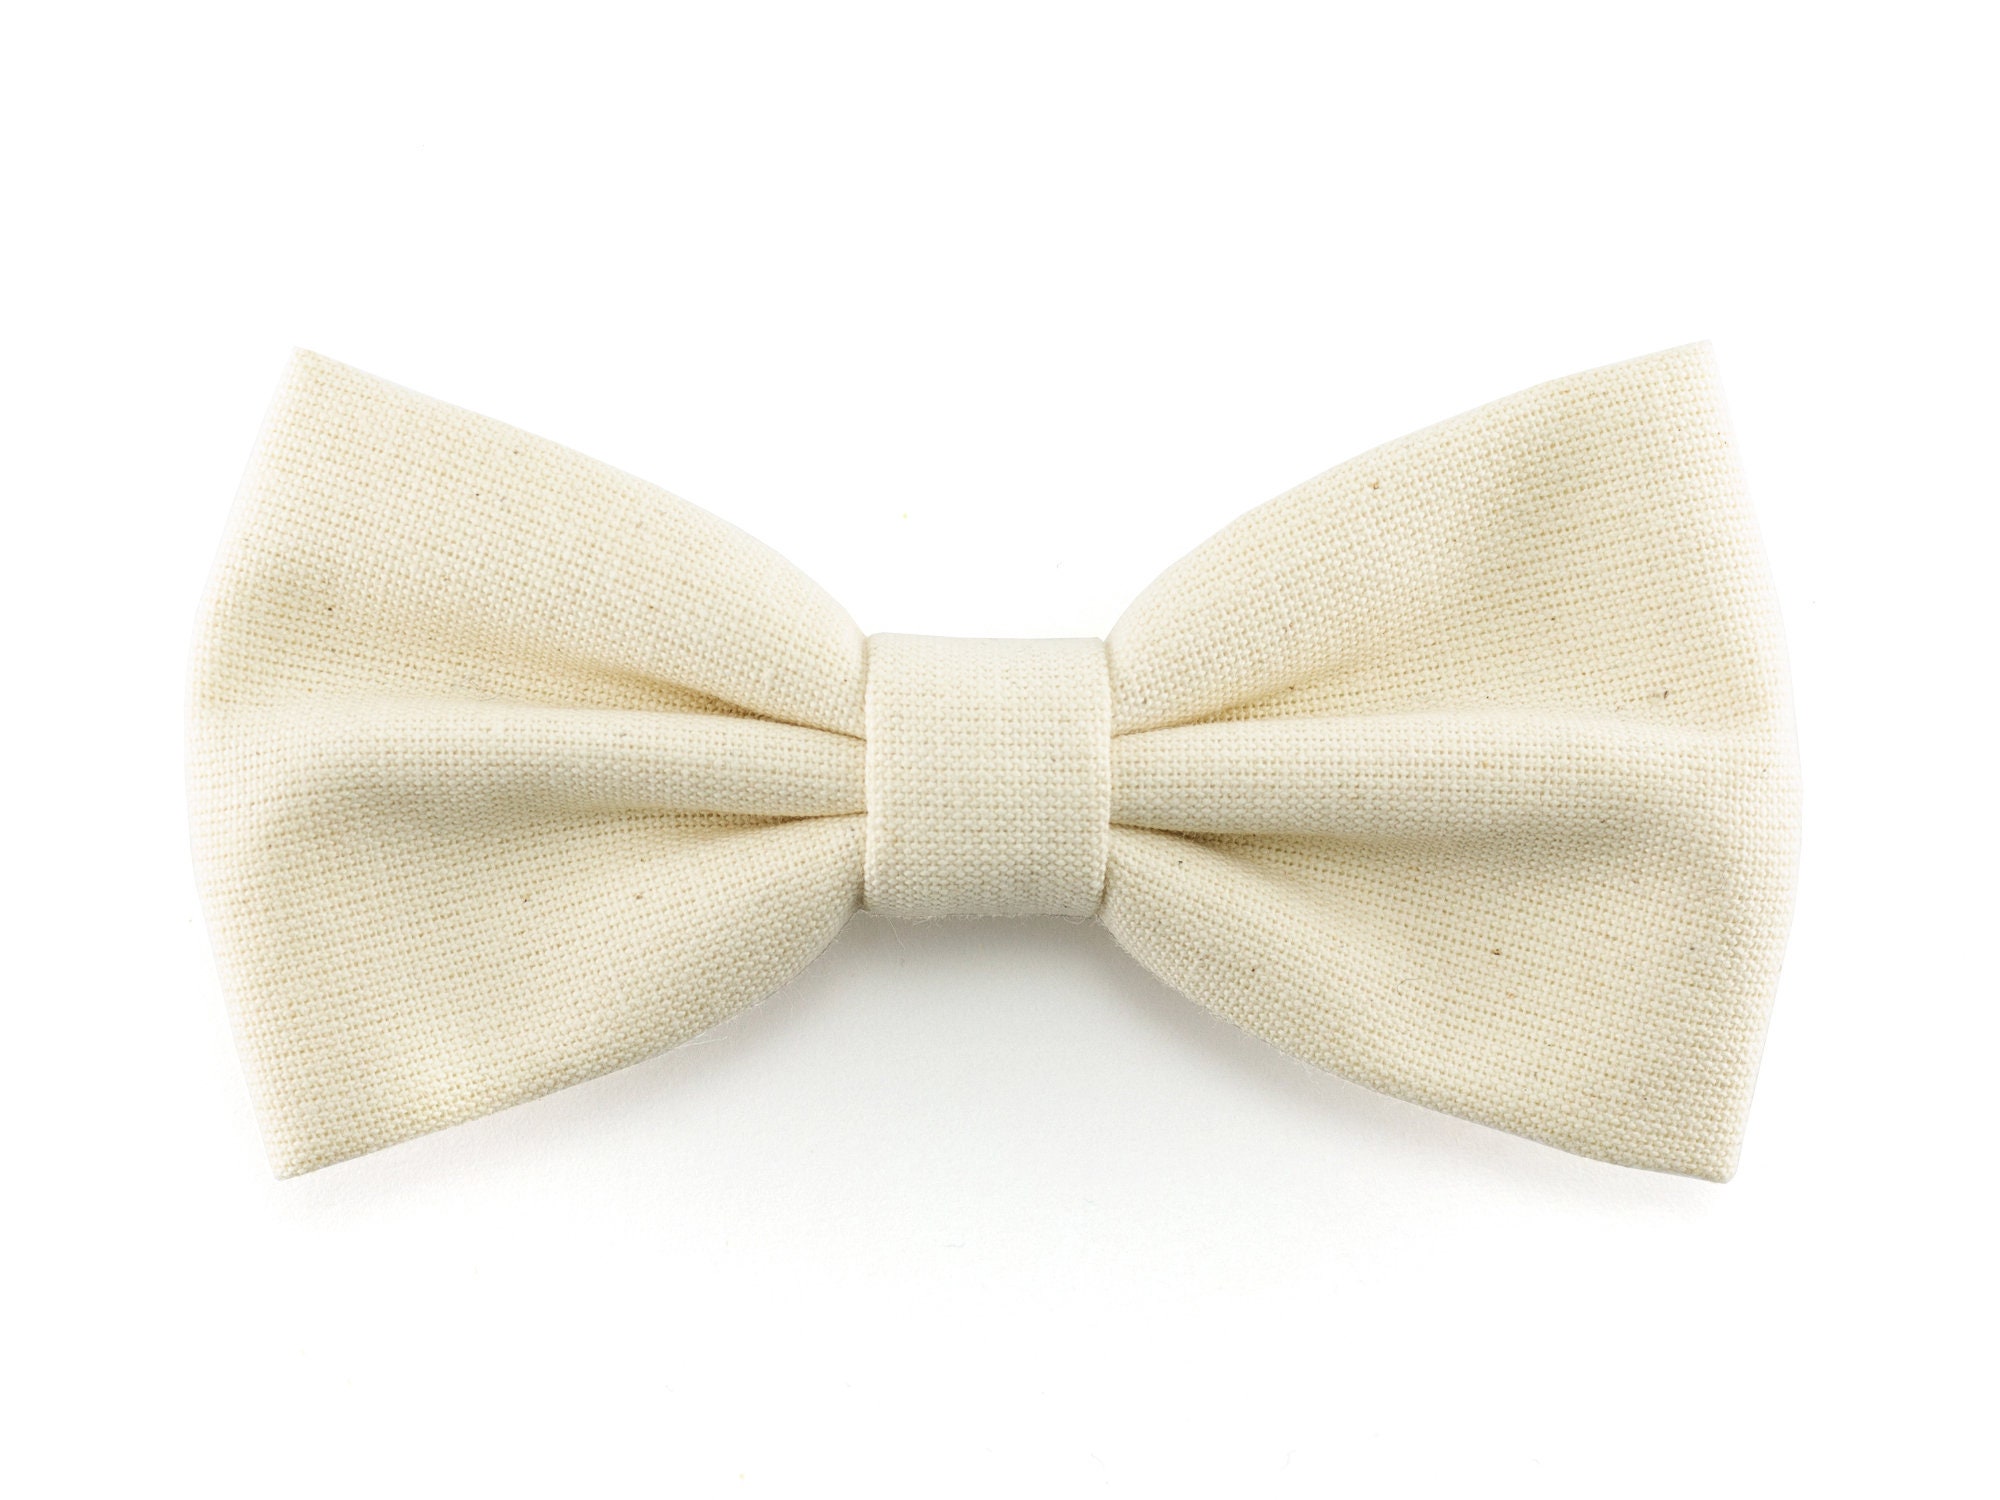 Cream bow tie for men ivory wedding groomsmen bowtie groom | Etsy